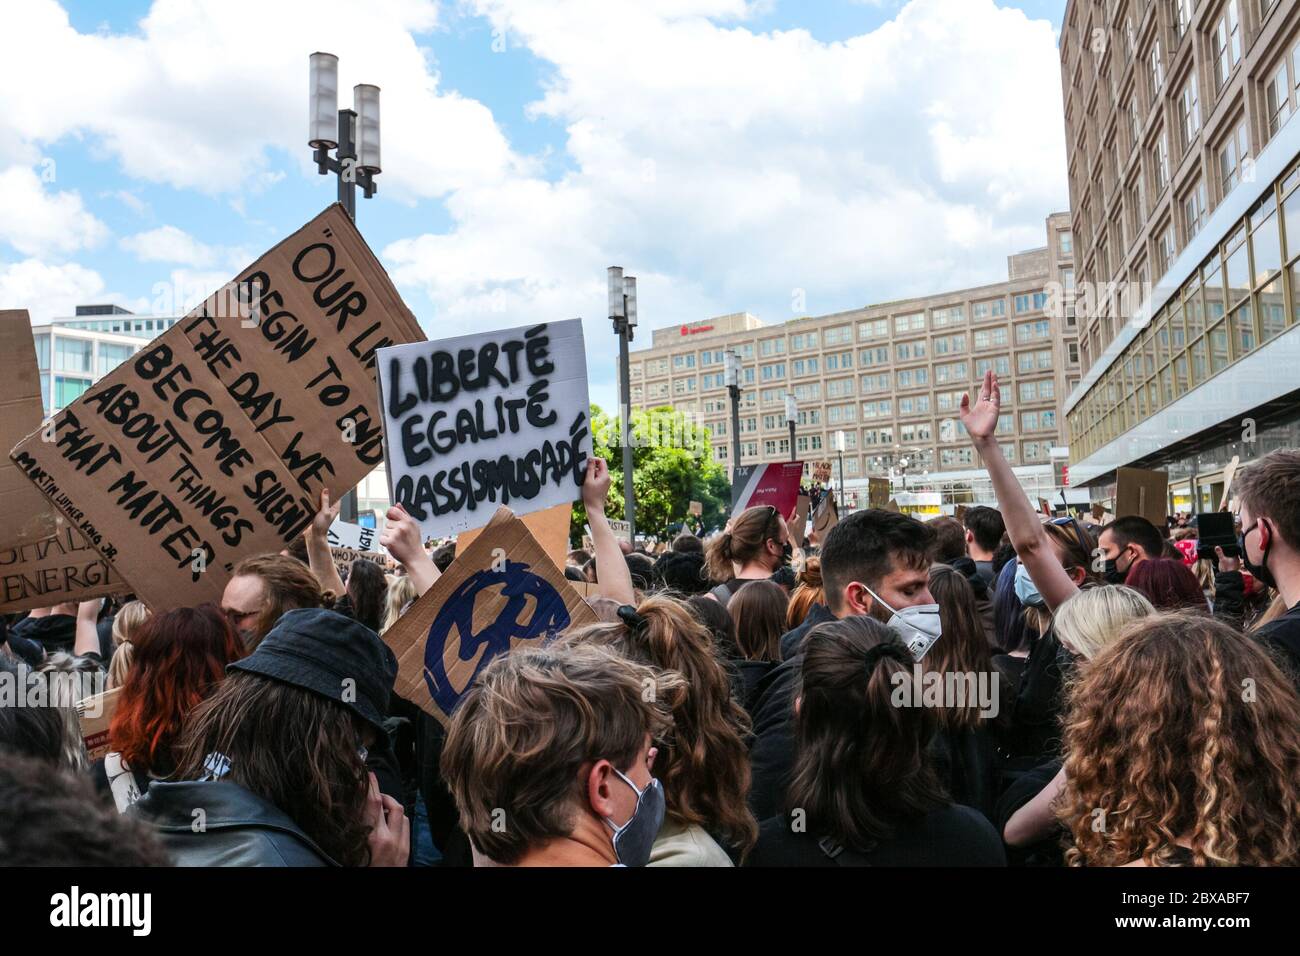 Il segno "Liberté egalité rassismusadé" (liberta', uguaglianza e razzismo tedesco addio) a una protesta contro la questione Black Lives ad Alexanderplatz. Foto Stock